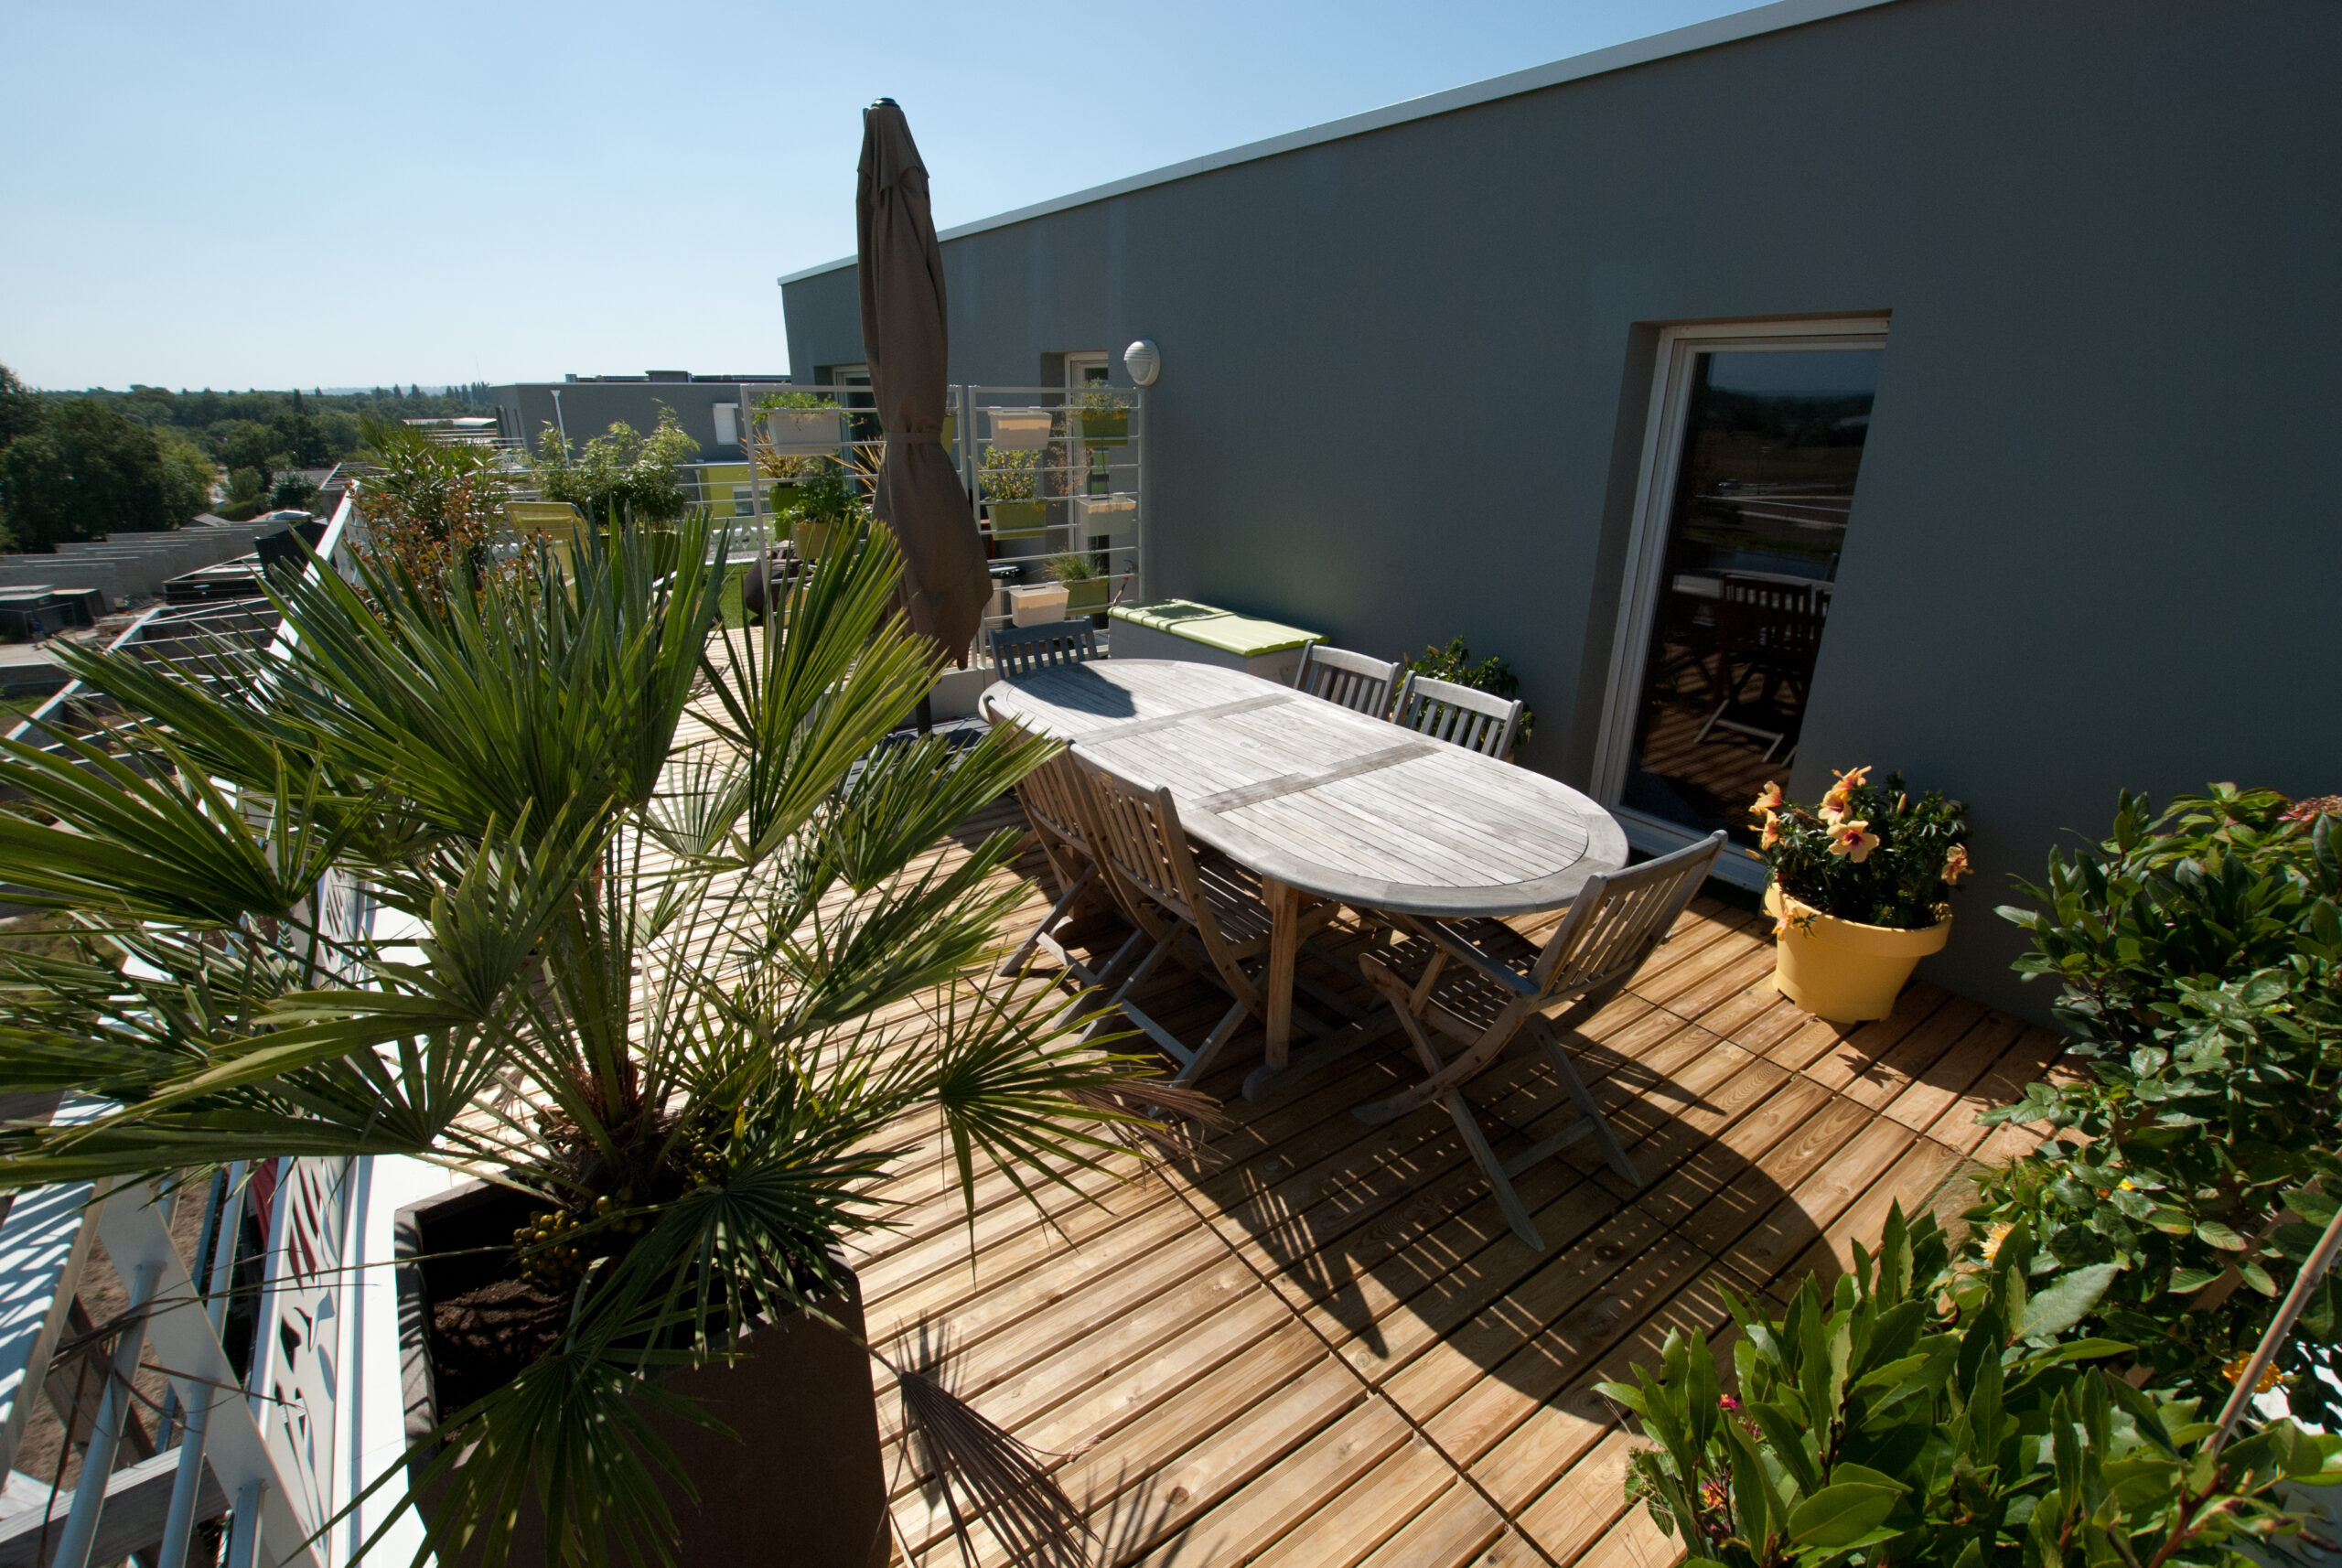 gazon synthétique sur terrasse, séparation en deux espaces distinct, plantes et pots, chamaerops